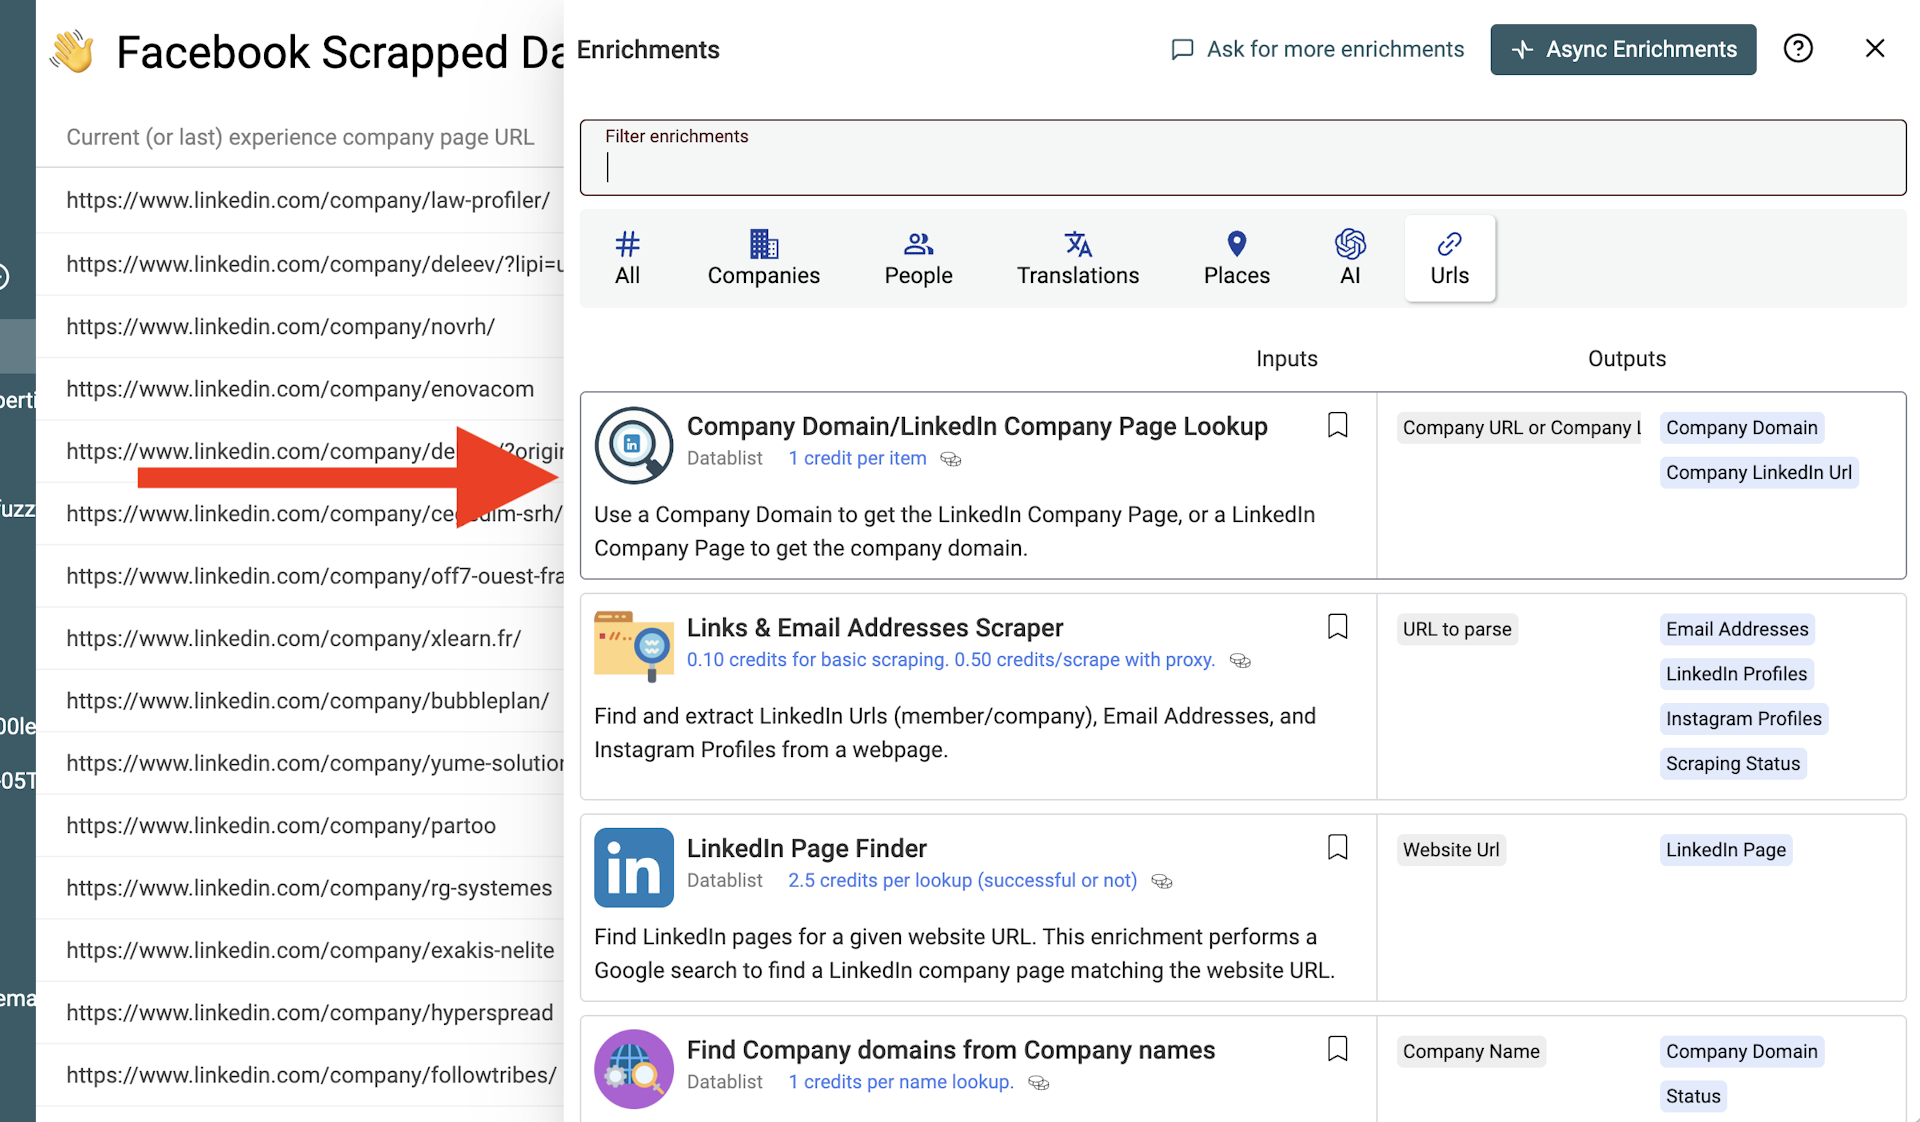 Company Domain/LinkedIn Company Page Lookup